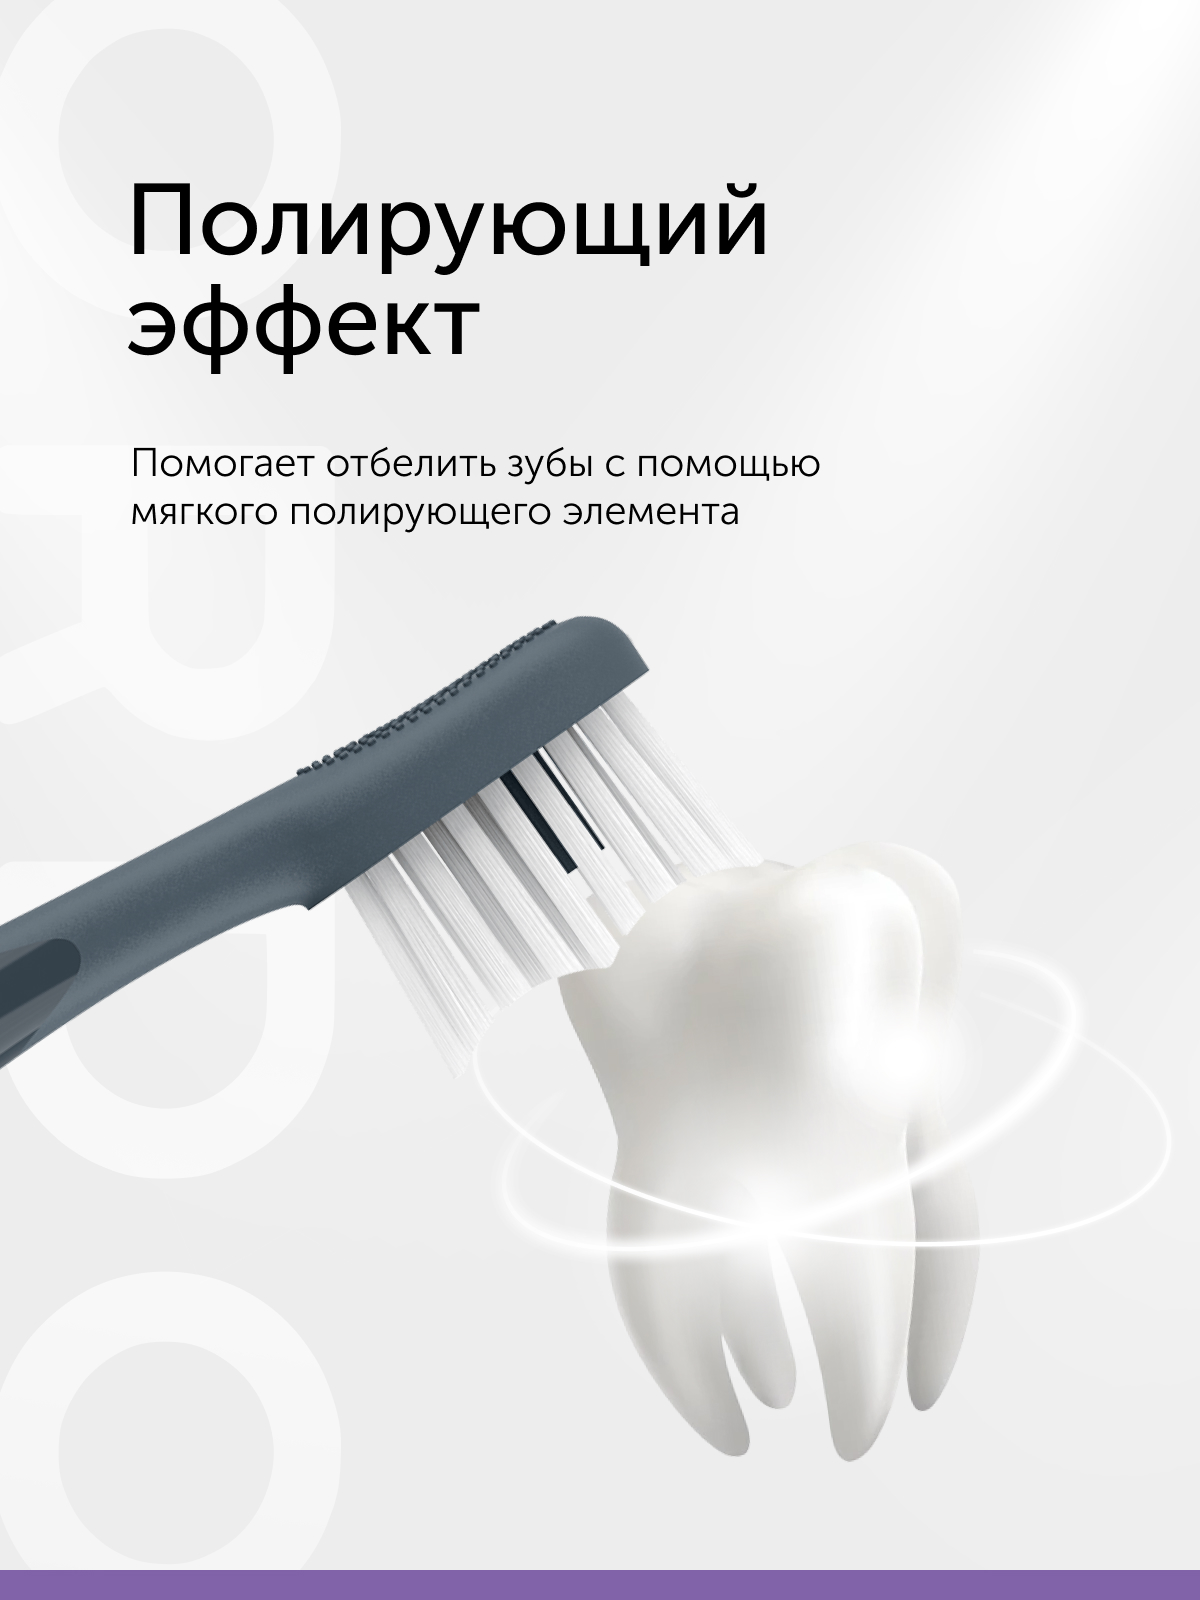 Электрическая зубная щетка ORDO SP2000-CG тёмно-серая - фото 3